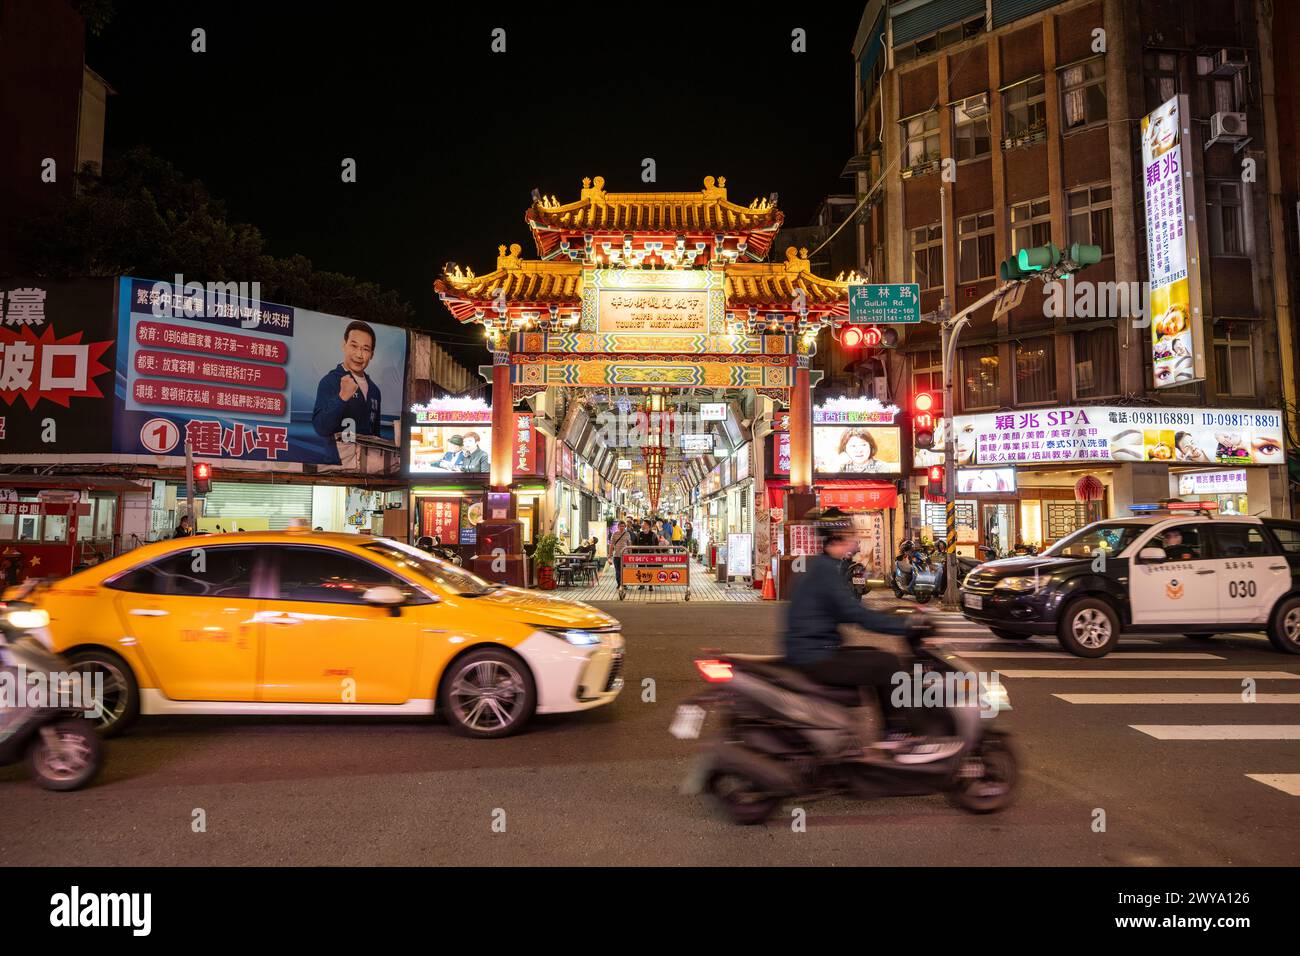 Una scena notturna della città con luci luminose di auto e cartelli dei negozi, che mostrano la vivacità della vita notturna urbana di Taipei Foto Stock